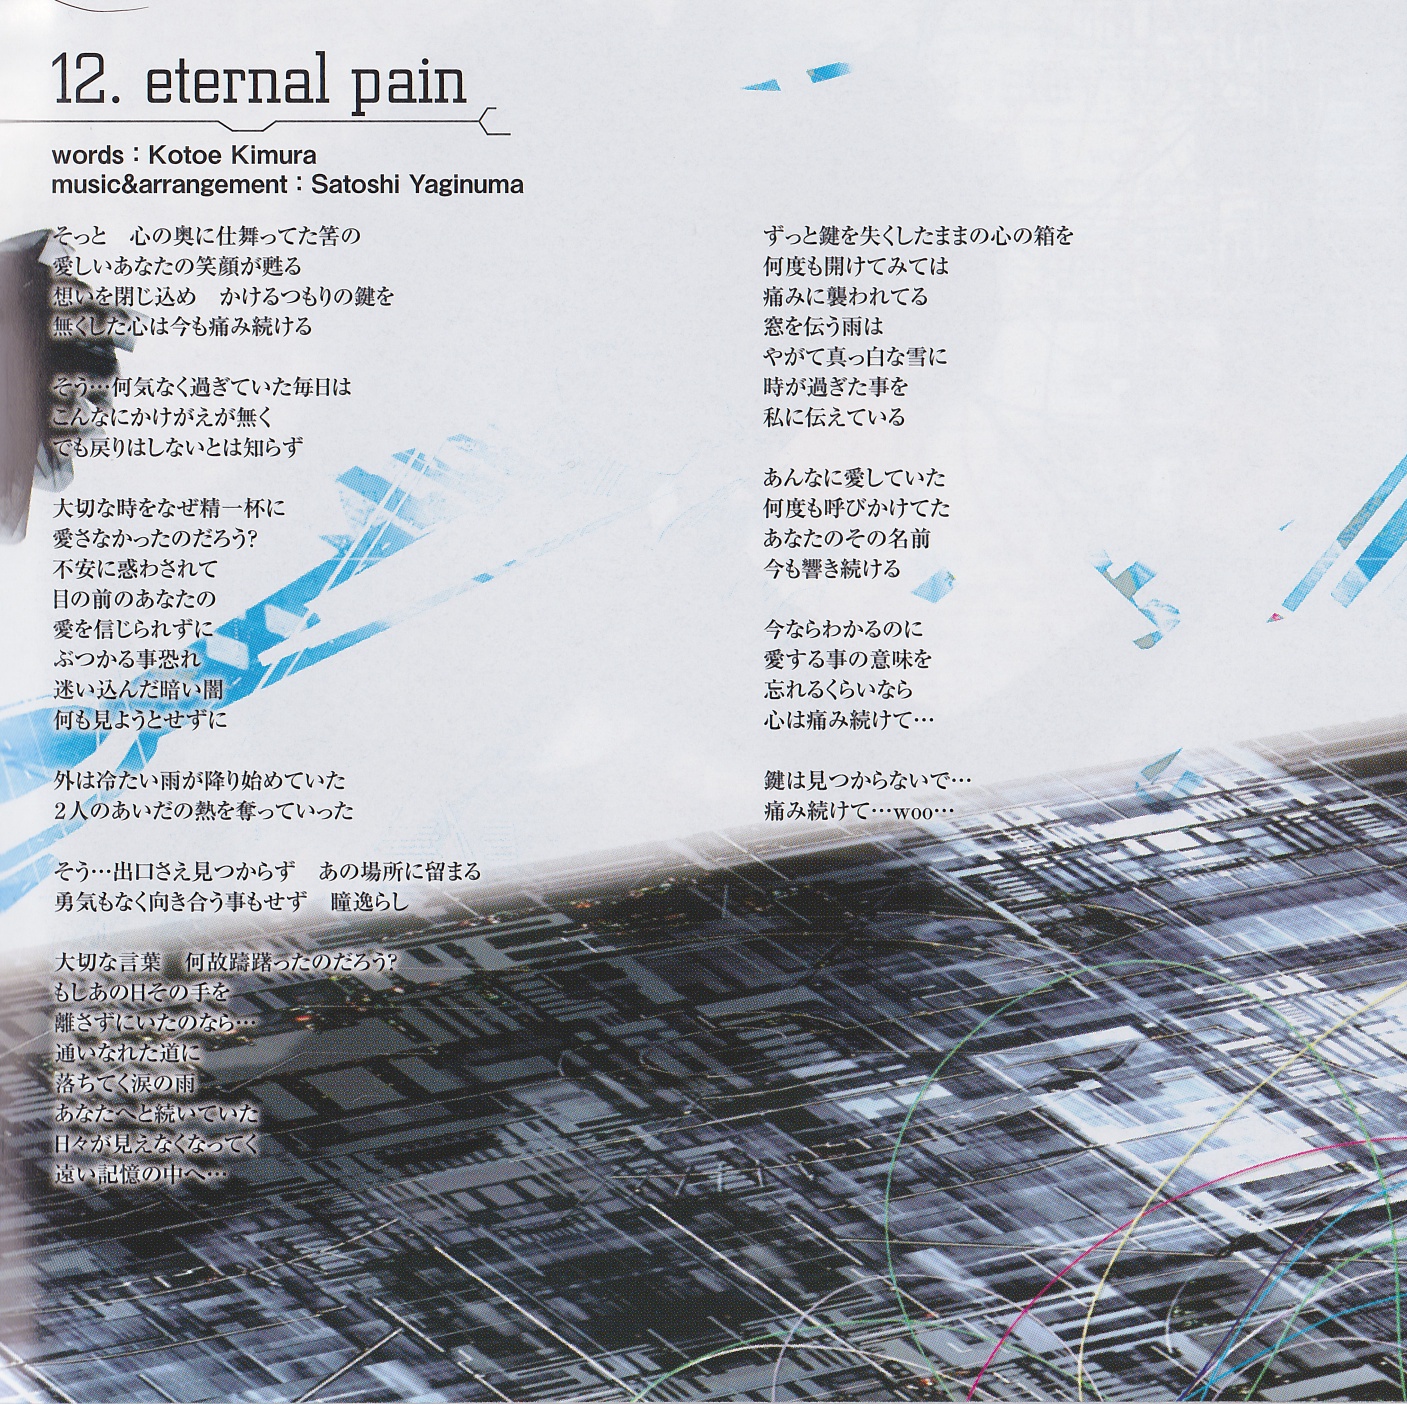 eternal pain